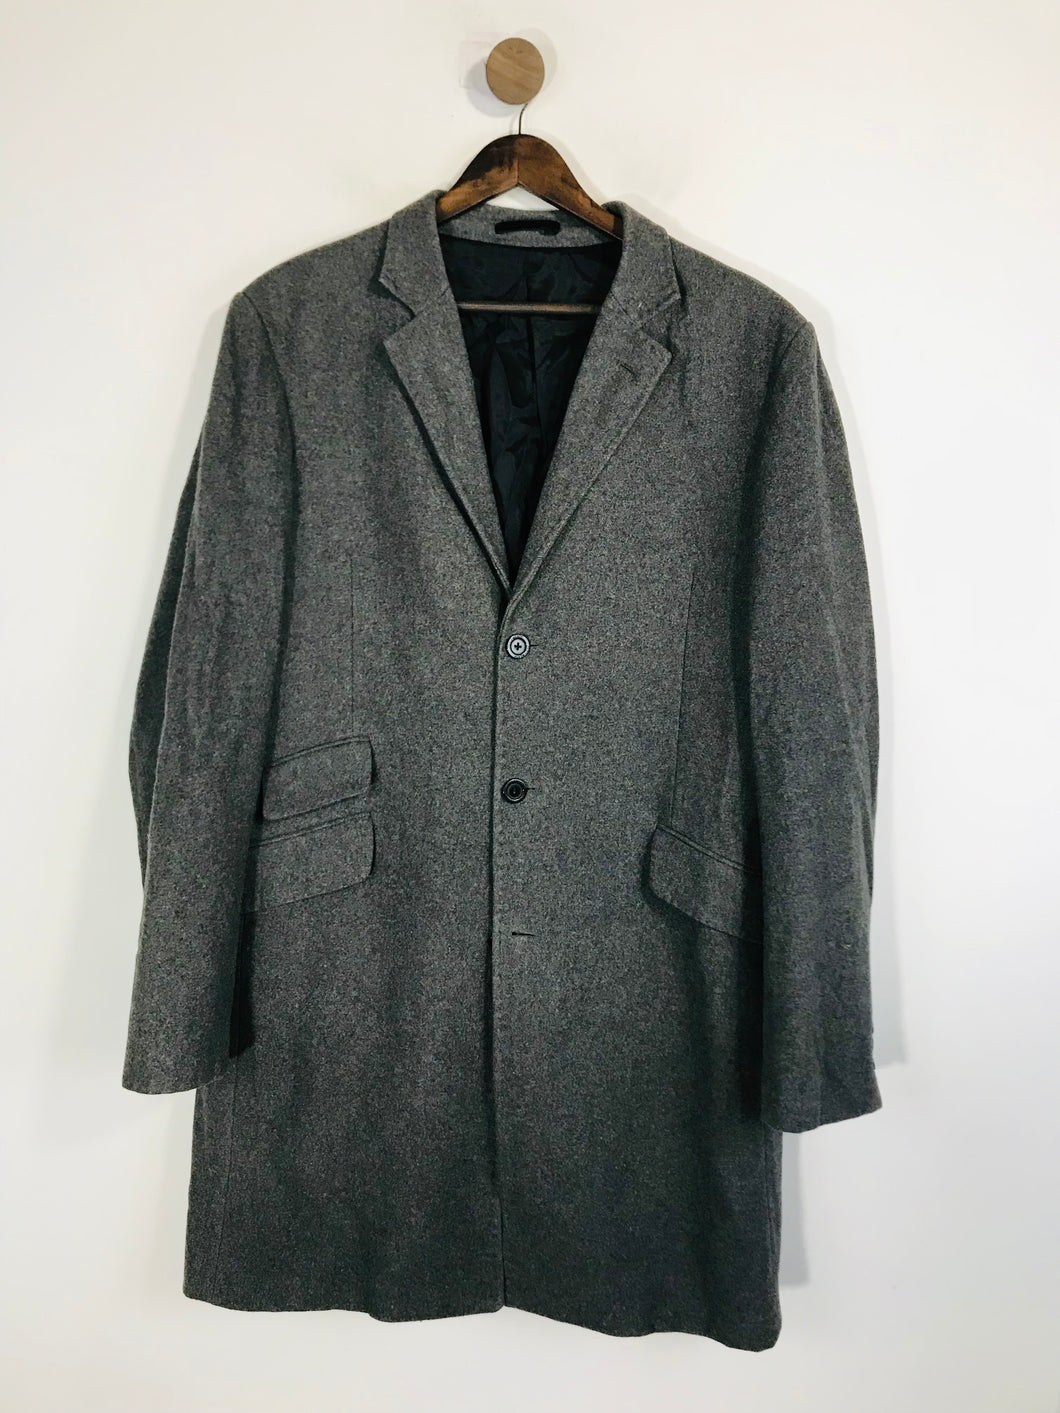 Peter Werth Men's Wool Smart Overcoat Coat | 5 | Grey